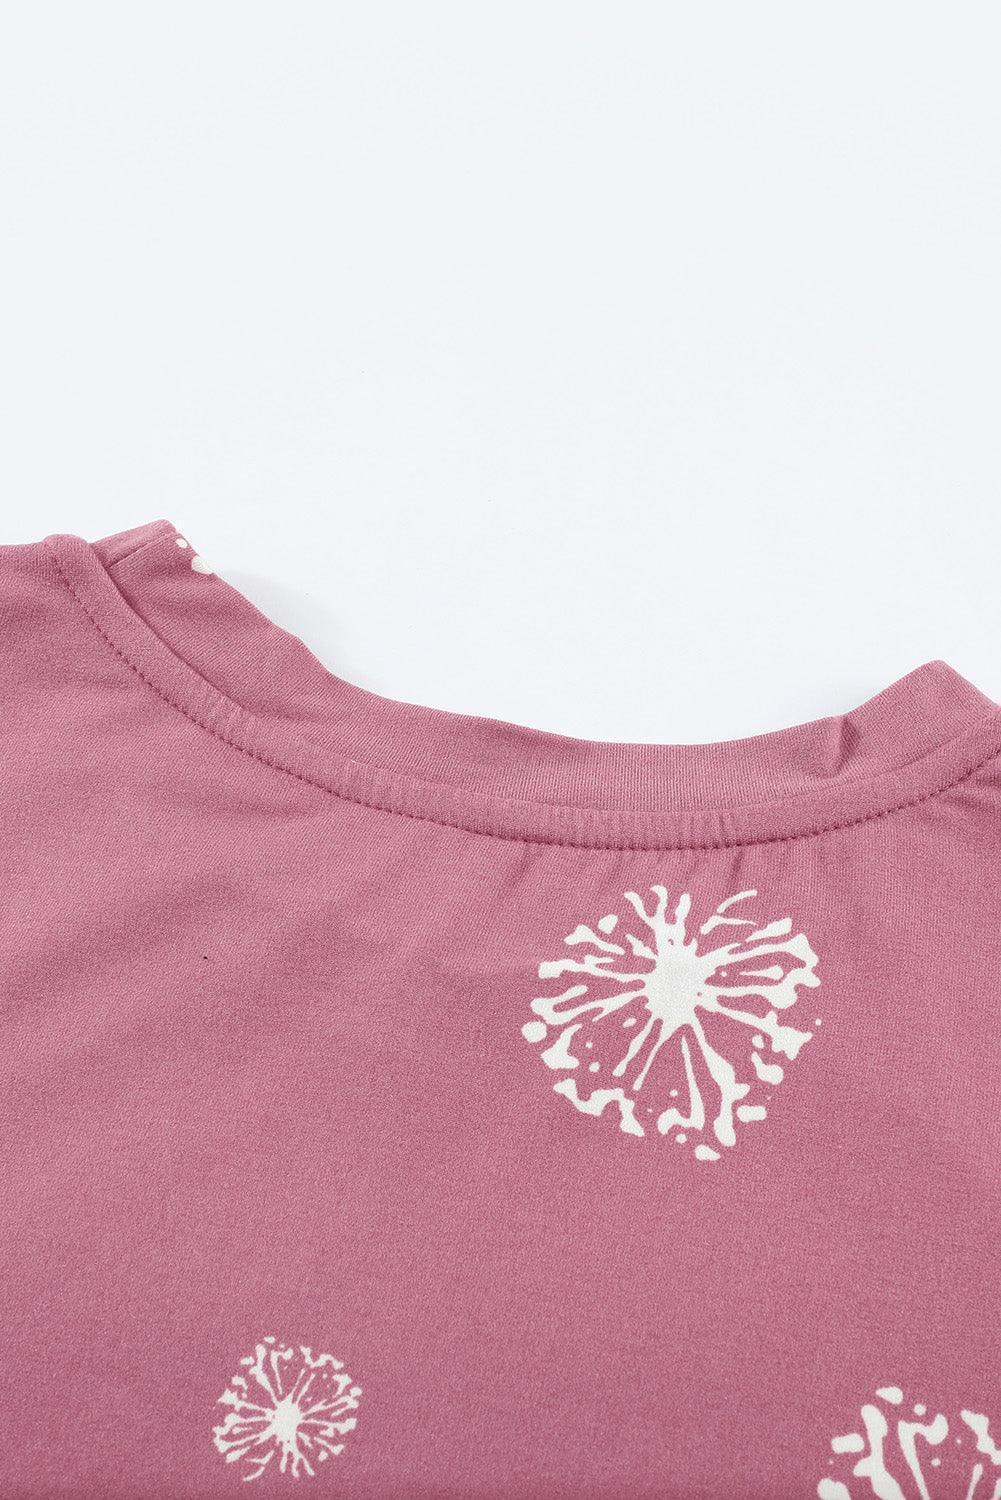 Girls Short Sleeve Dandelion Print Summer Tee - MXSTUDIO.COM